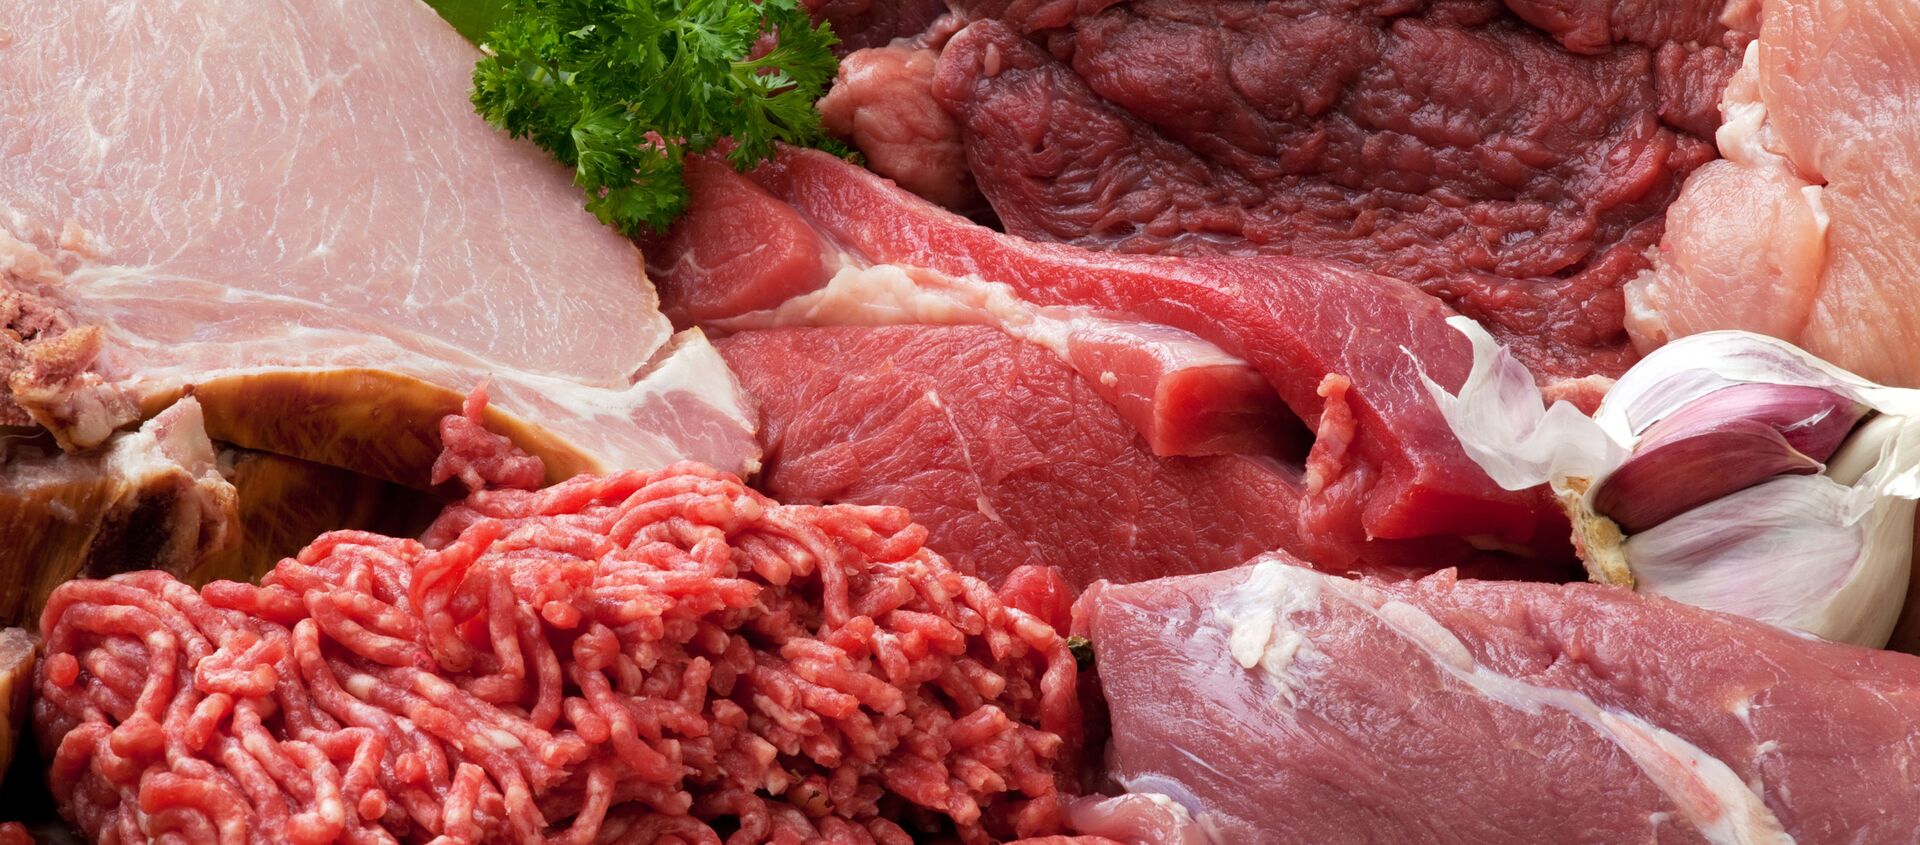 Thịt đỏ như heo, bò có hàm lượng chất sắt cao - Sputnik Việt Nam, 1920, 17.04.2021